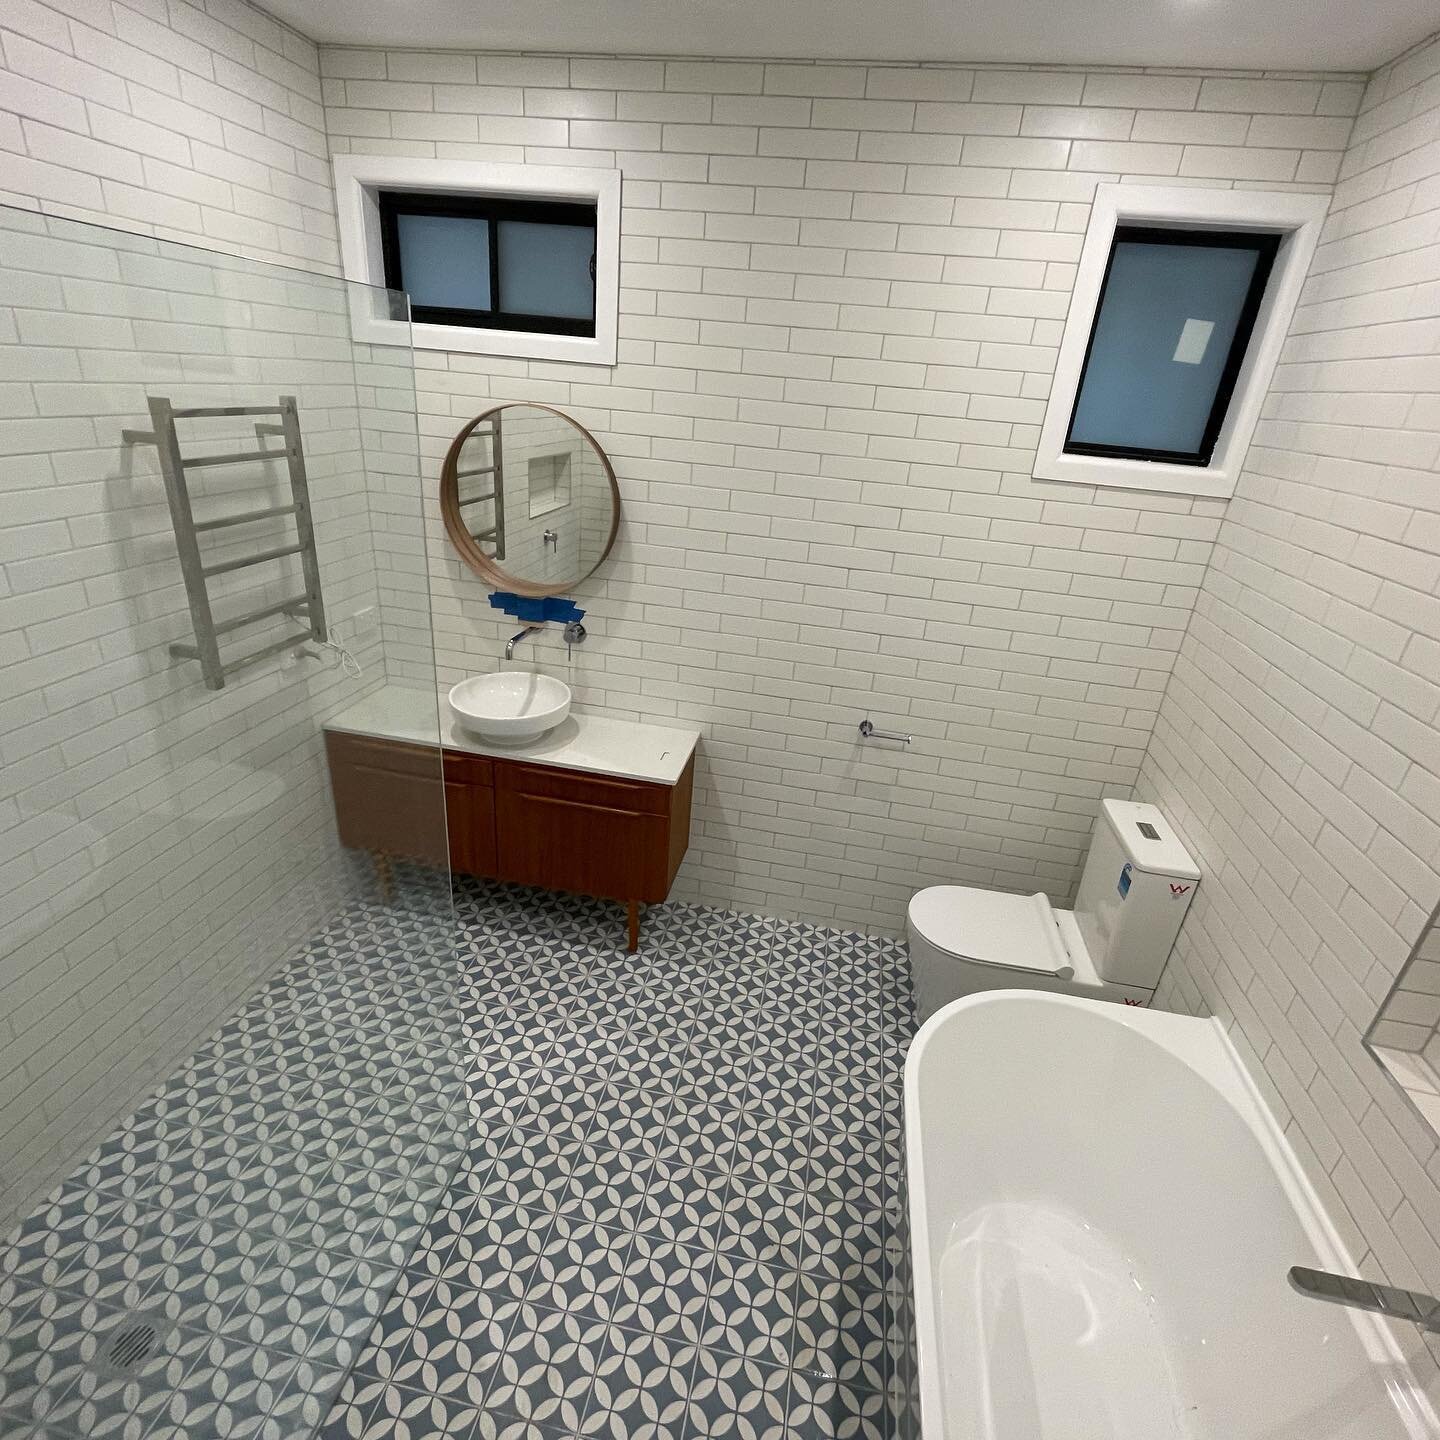 Main bathroom fit off in Eltham 😊👍

#plumber #melbourneplumbers #femaleplumber #melbournefemaleplumbers #plumbingporn #plumblife #womeninbusiness #womeninconstruction #renovation  #bathroom #Eltham #melbourne